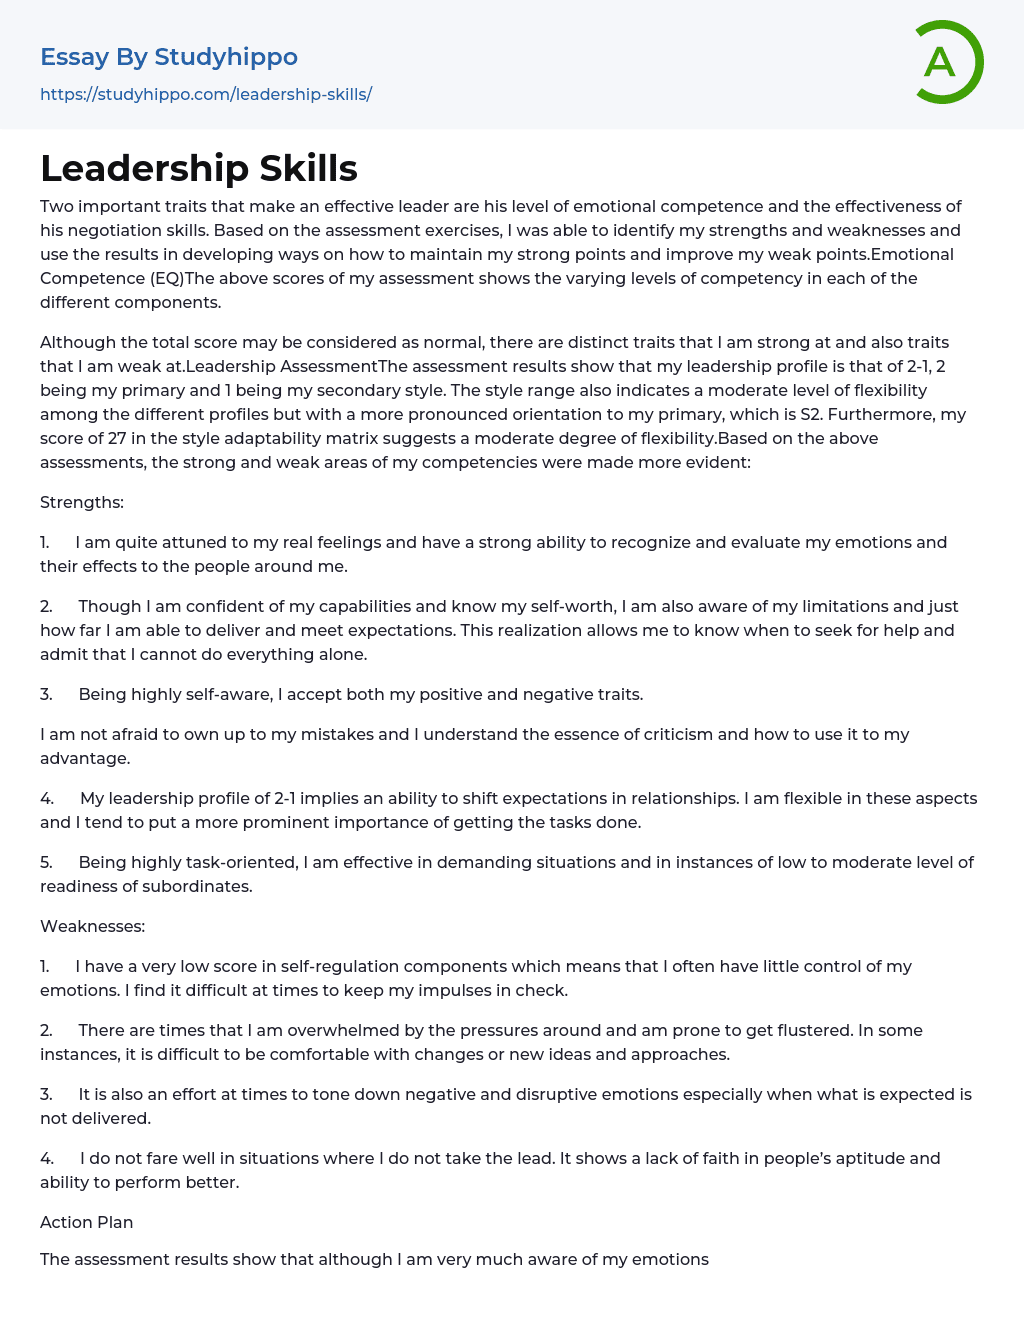 Leadership Skills Essay Example